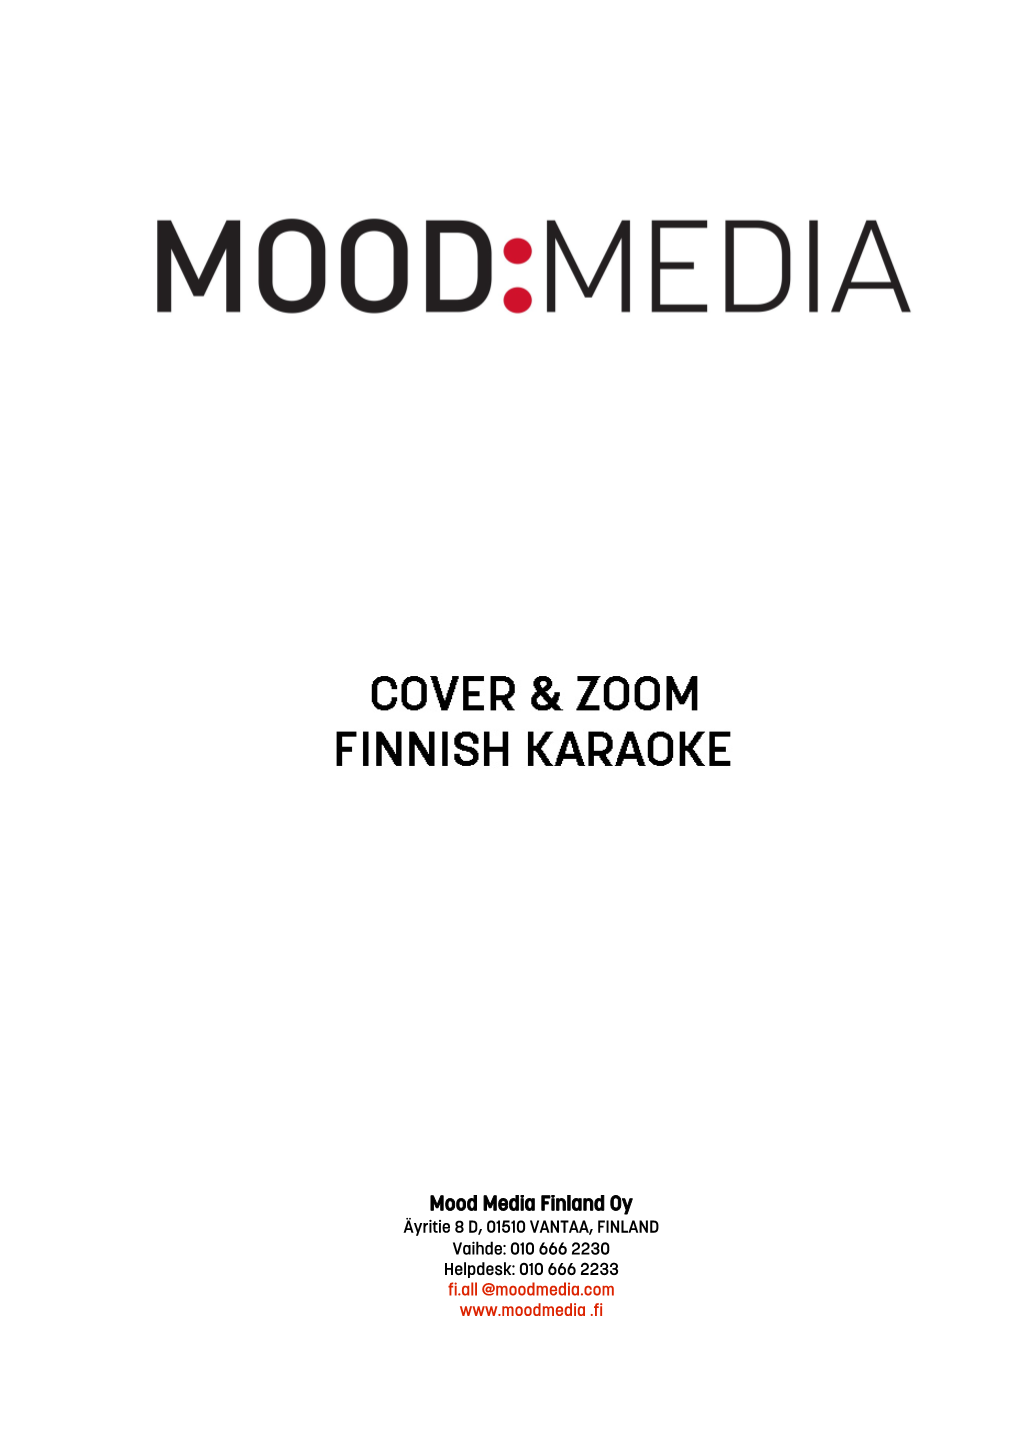 Mood Media Finland Oy